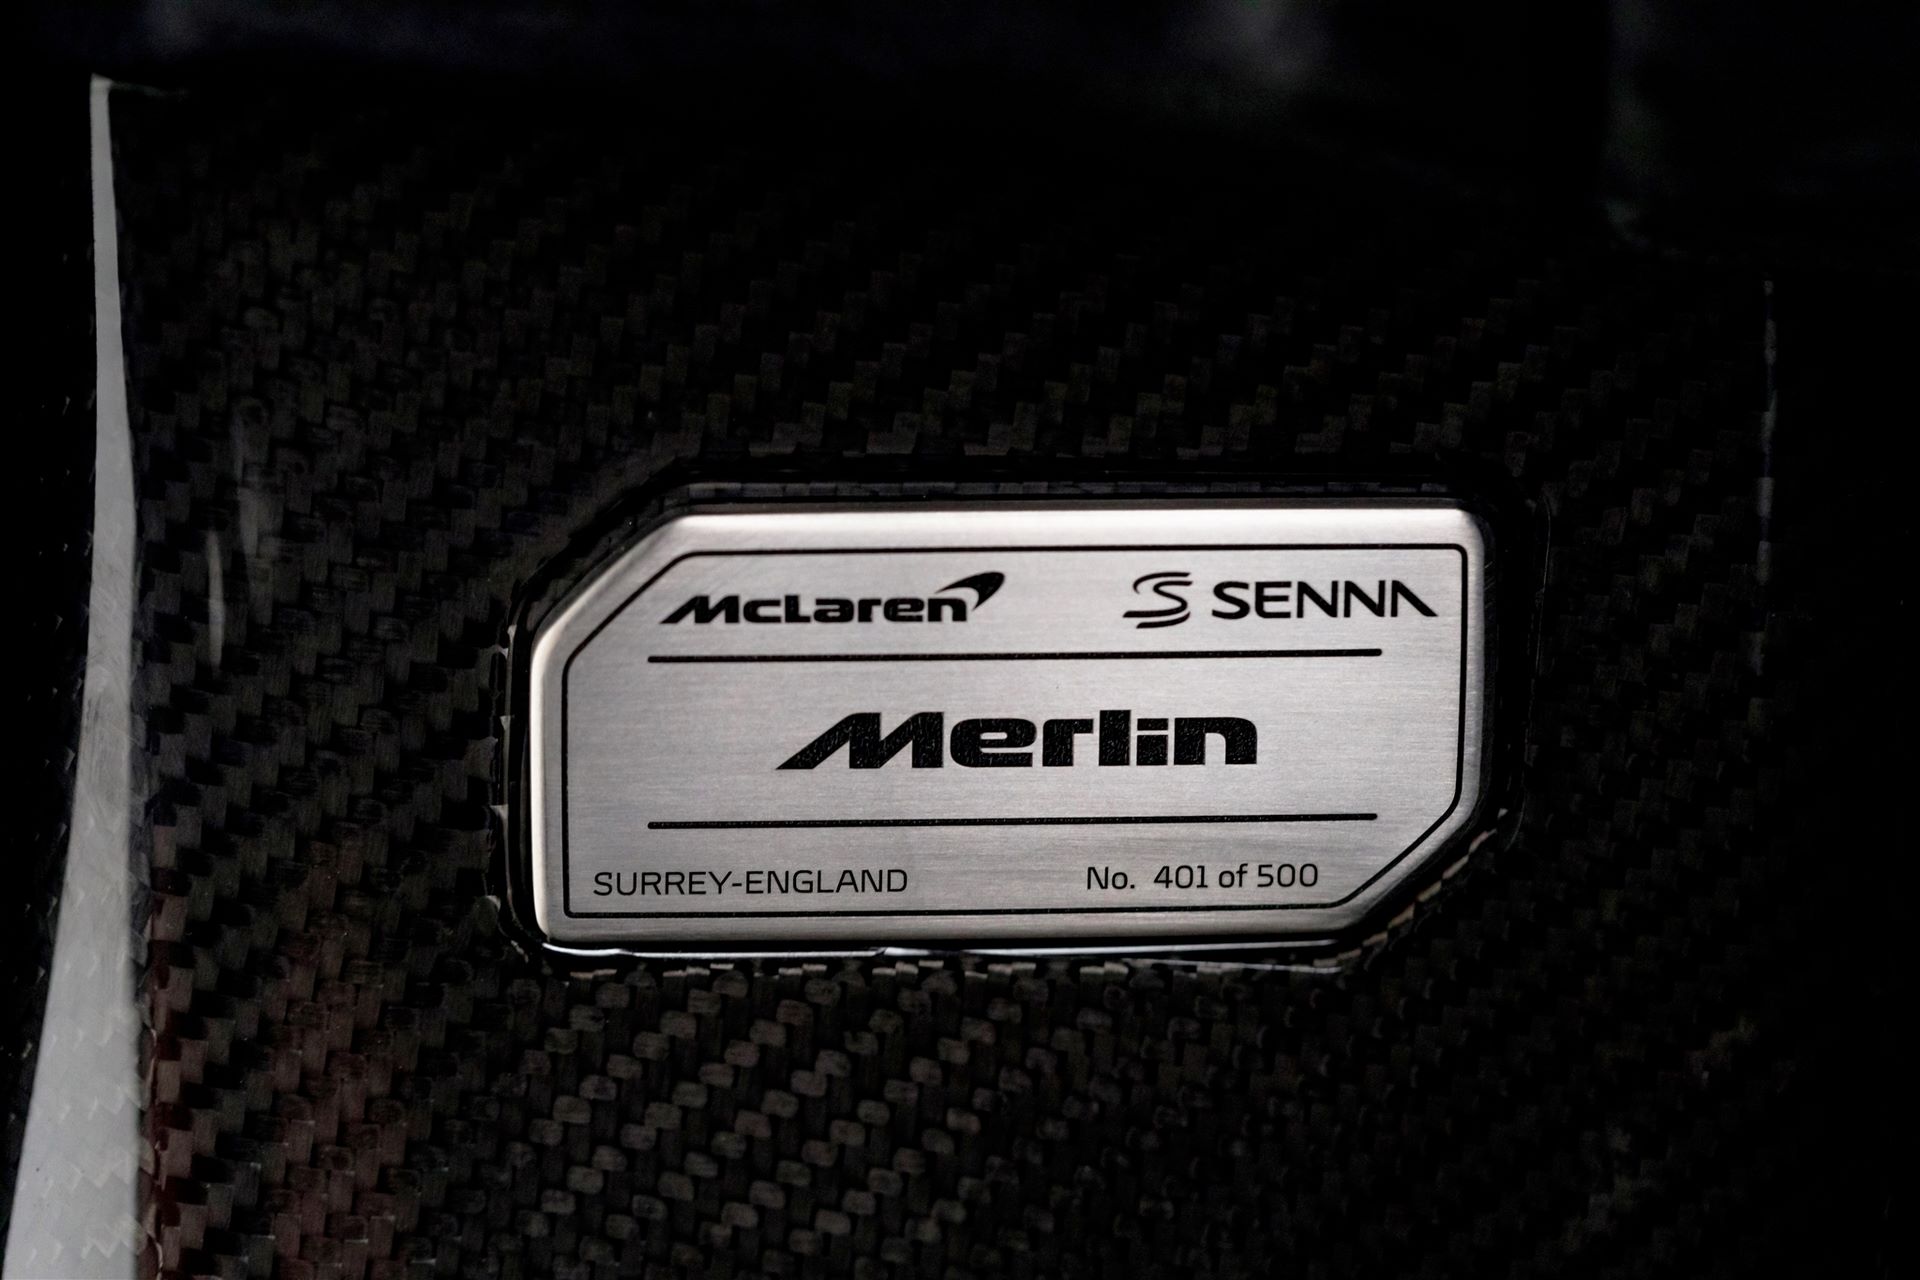 McLaren-Senna-Merlin-21